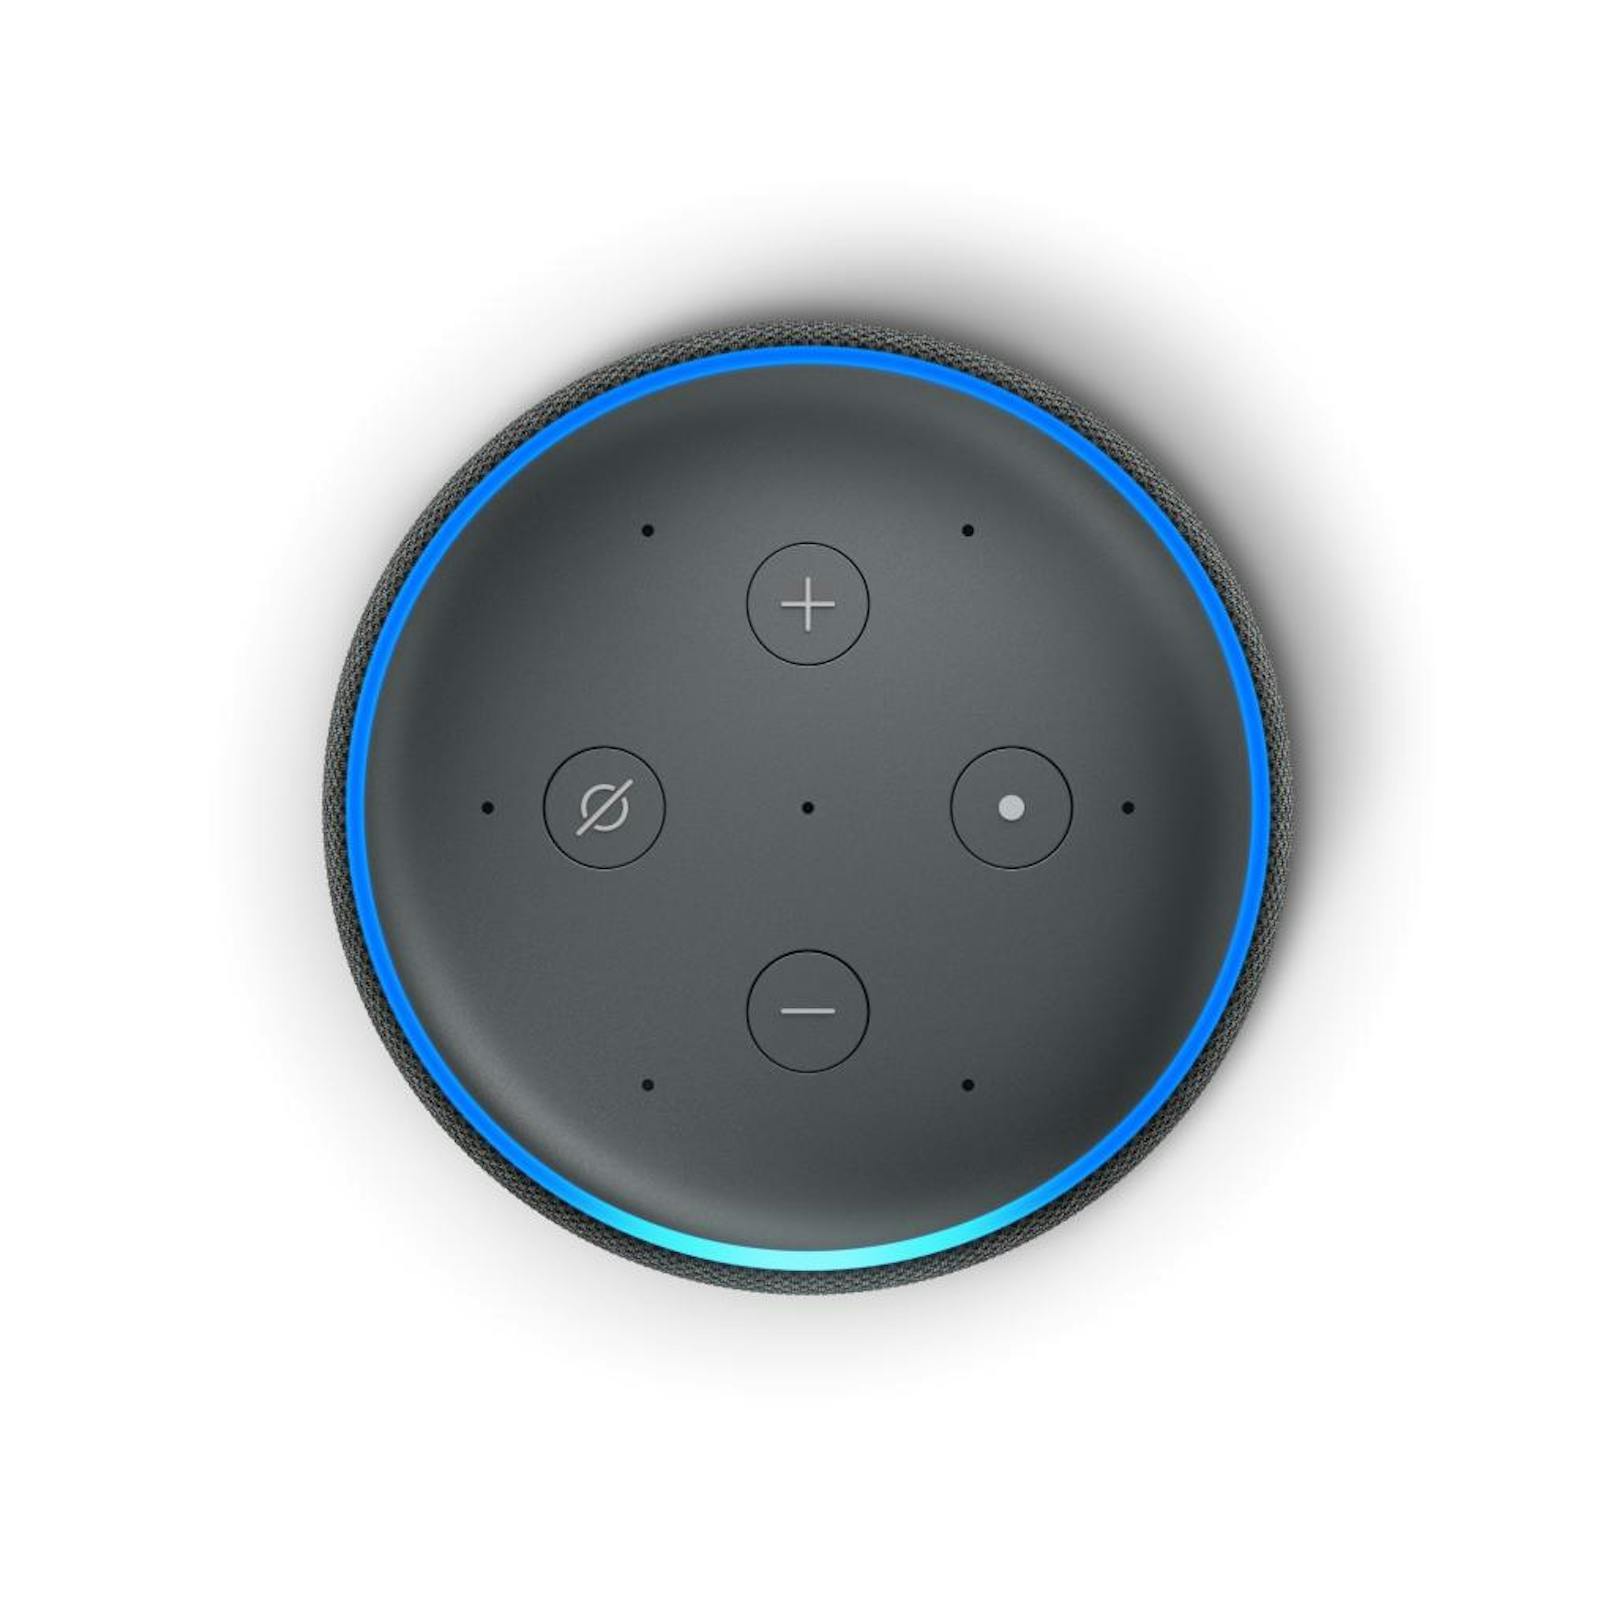 Ab sofort können Nutzer natürlicher mit Alexa kommunizieren: Mit dem Aufmerksamkeitsmodus ist Alexa in der Lage, wie in einer Unterhaltung auf Folgefragen zu antworten, ohne dass sie dafür
nochmal mit dem Aktivierungswort angesprochen werden muss. Möchte man beispielsweise im Smart Home sein Licht steuern, musste man bislang sagen: "Alexa, Wohnzimmerlicht an", "Alexa, dreißig Prozent Helligkeit" beziehungsweise "Alexa, Farbe auf grün". Ist der Aufmerksamkeitsmodus in der Alexa App unter "Geräteeinstellungen" aktiviert, wird das Ganze gleich viel natürlicher: "Alexa, Wohnzimmerlicht an", "Dreißig Prozent Helligkeit" beziehungsweise "Farbe auf grün".